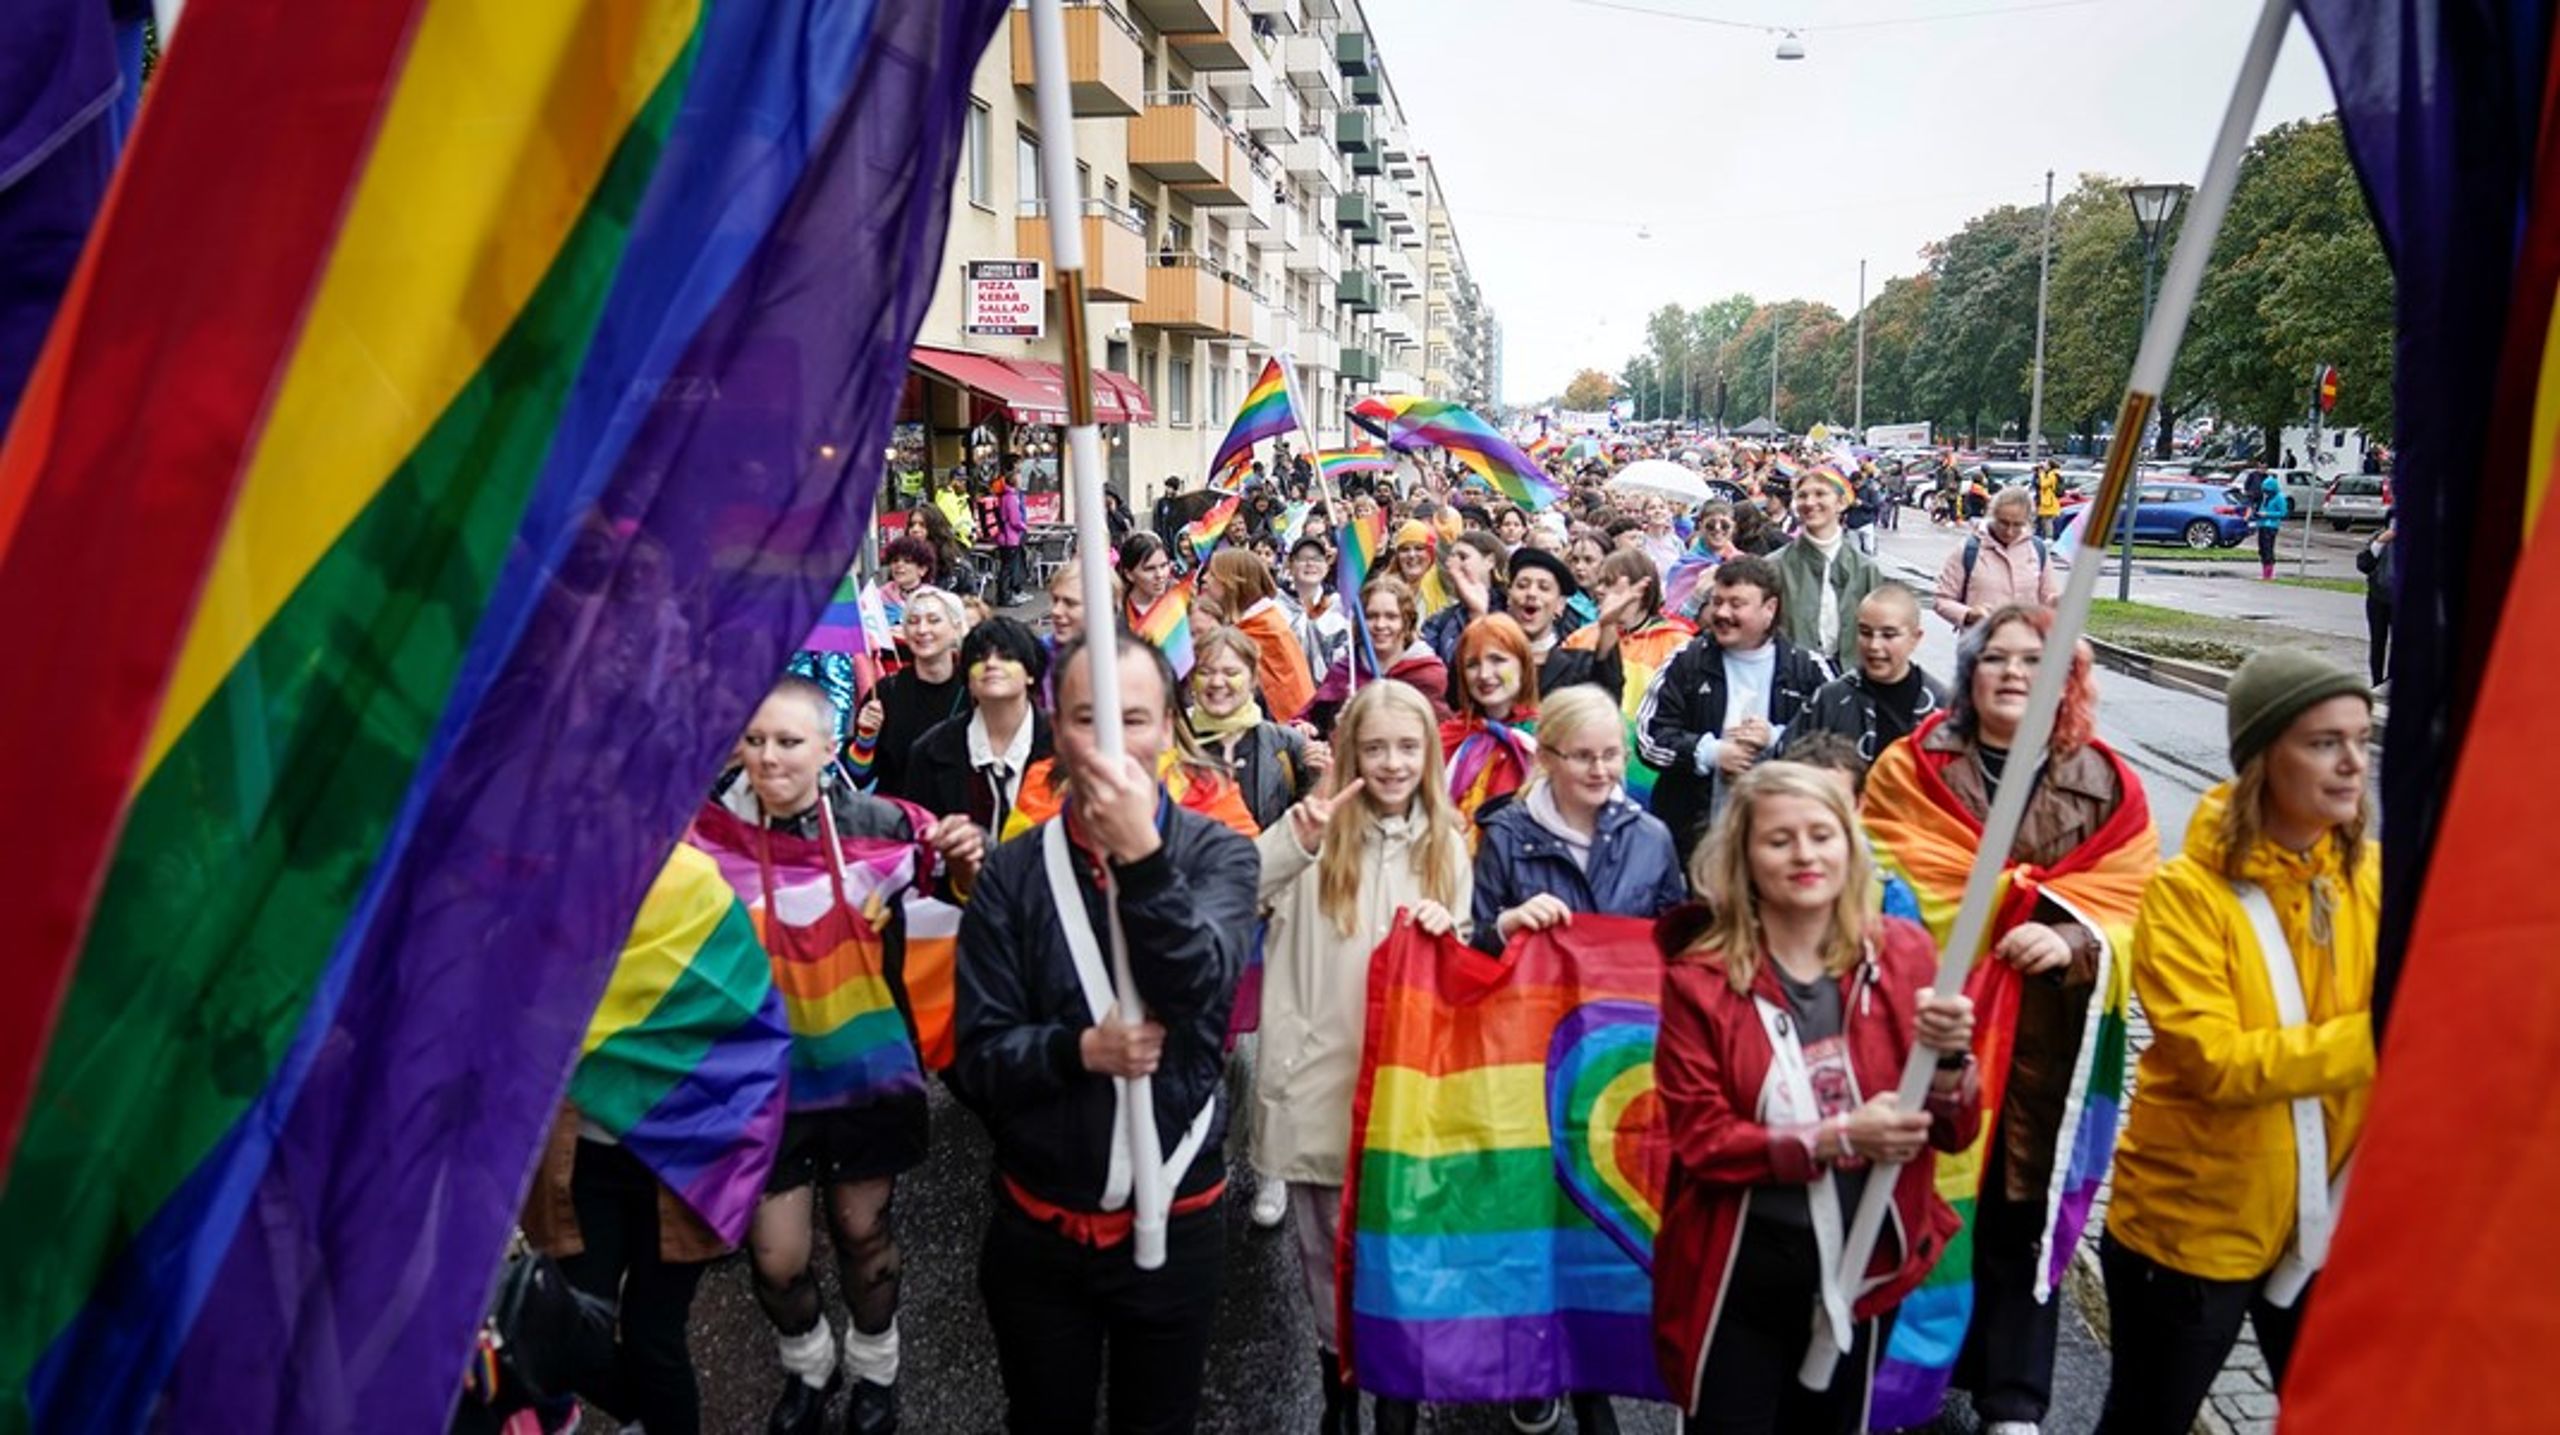 Det behövs pridefestivaler, urfolksperspektiv och rättighetsorganisationer, skriver debattören.